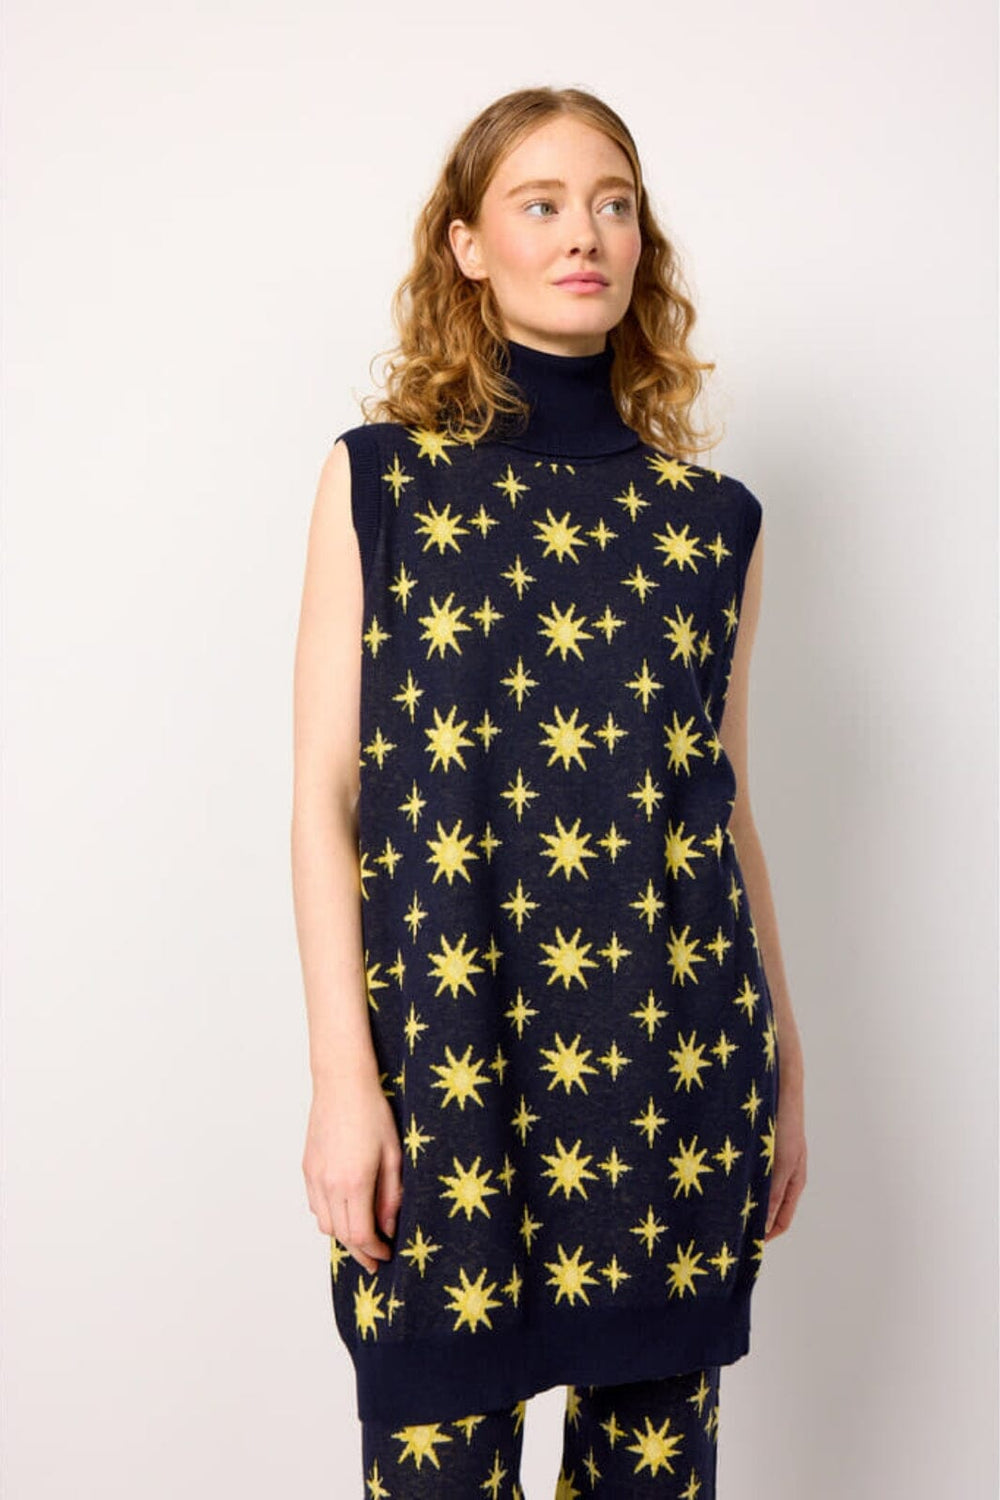 Hunkøn - Orion Knit Sweater vest - Midtnight Stars Veste 